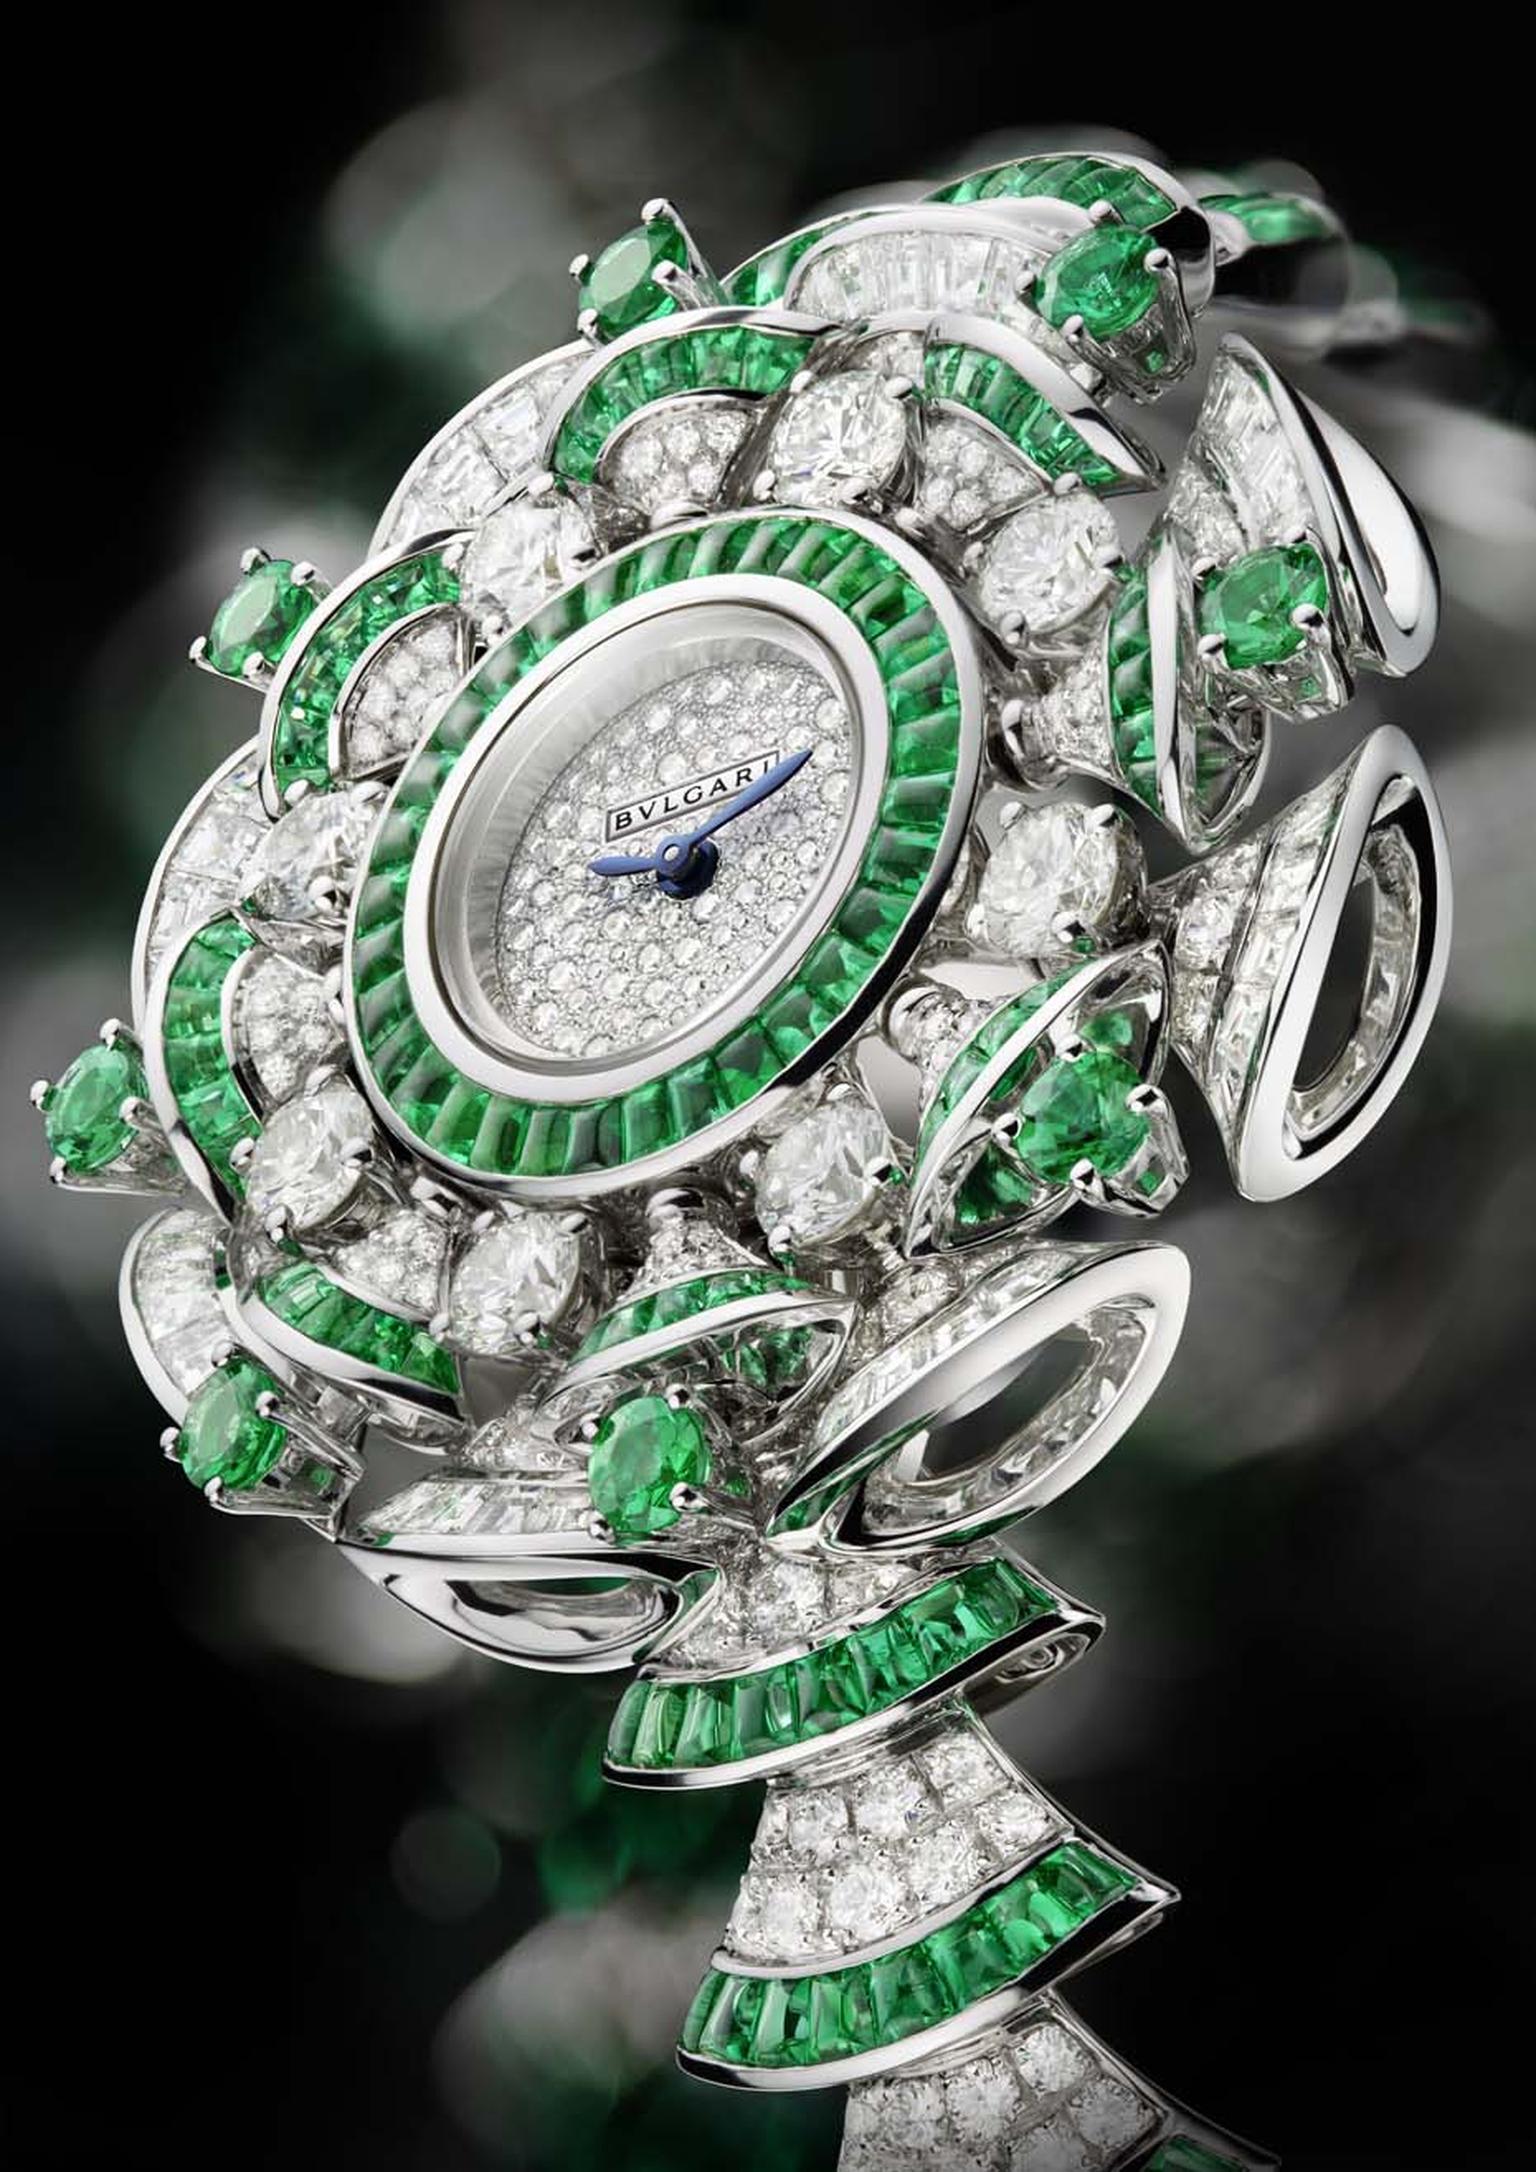 Bulgari Diva watch with emeralds and diamonds.